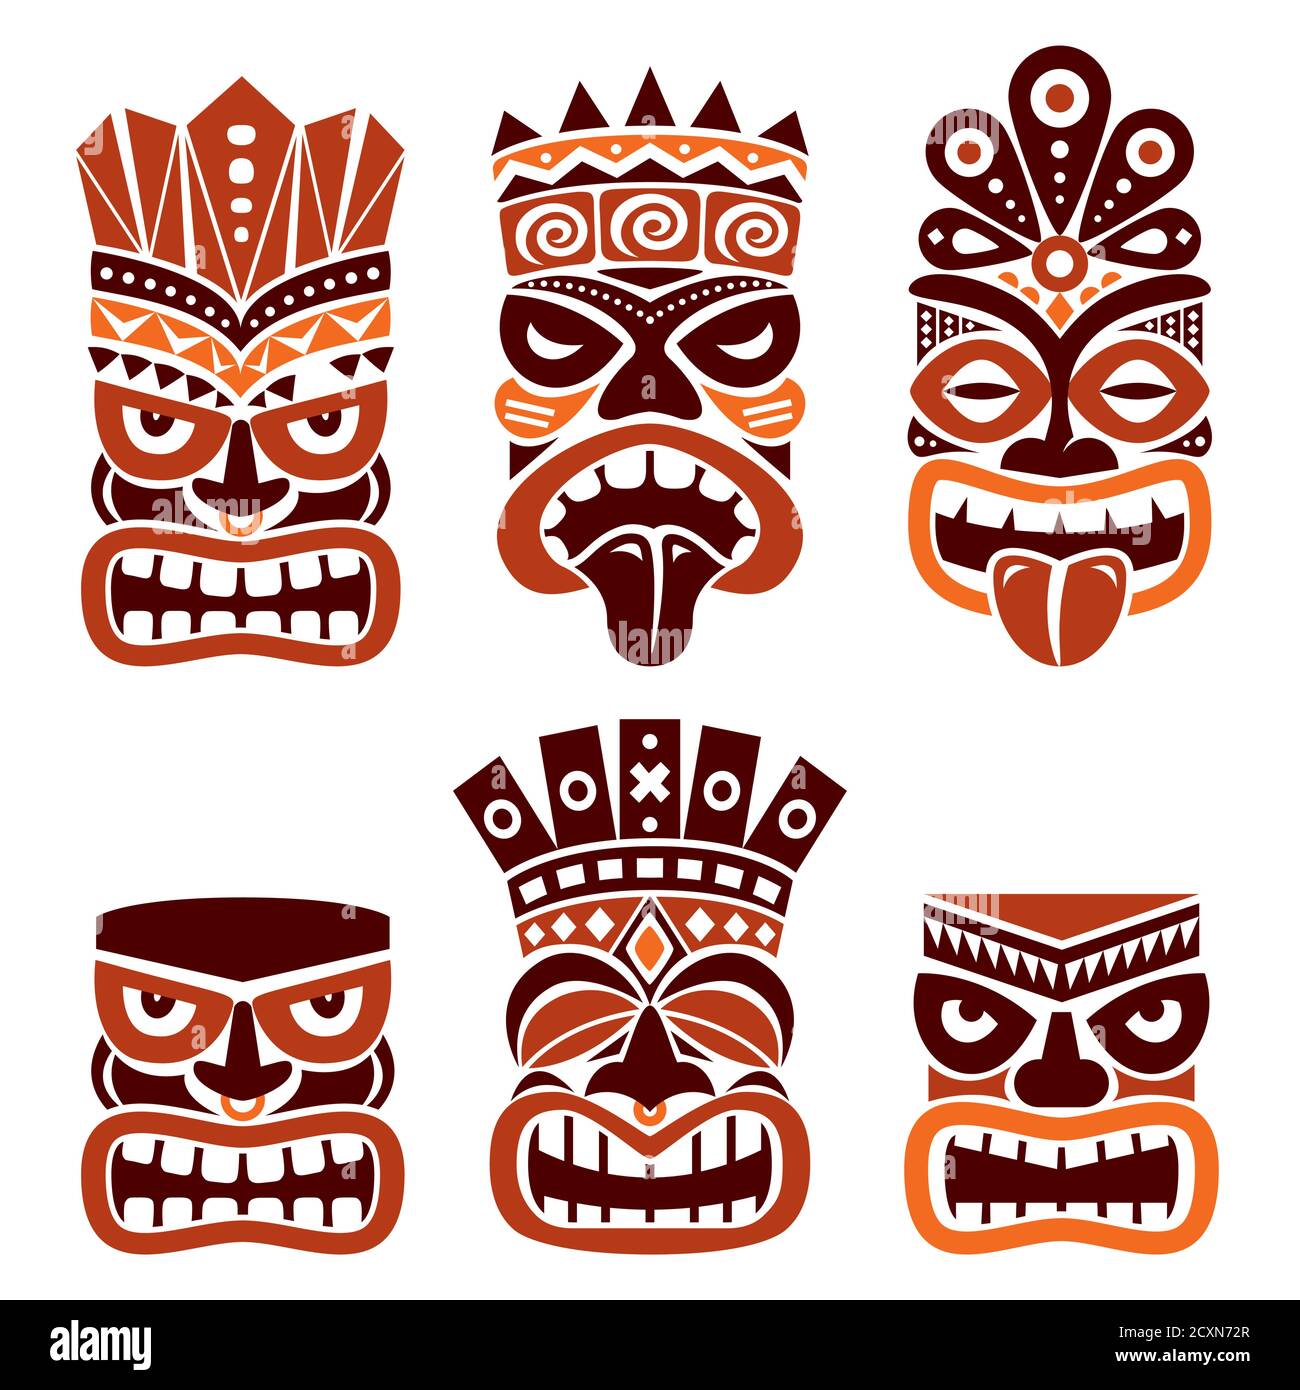 Hawaïen et Polynésie Tiki Head totem vecteur design ensemble- tribal art populaire en marron sur fond blanc Illustration de Vecteur